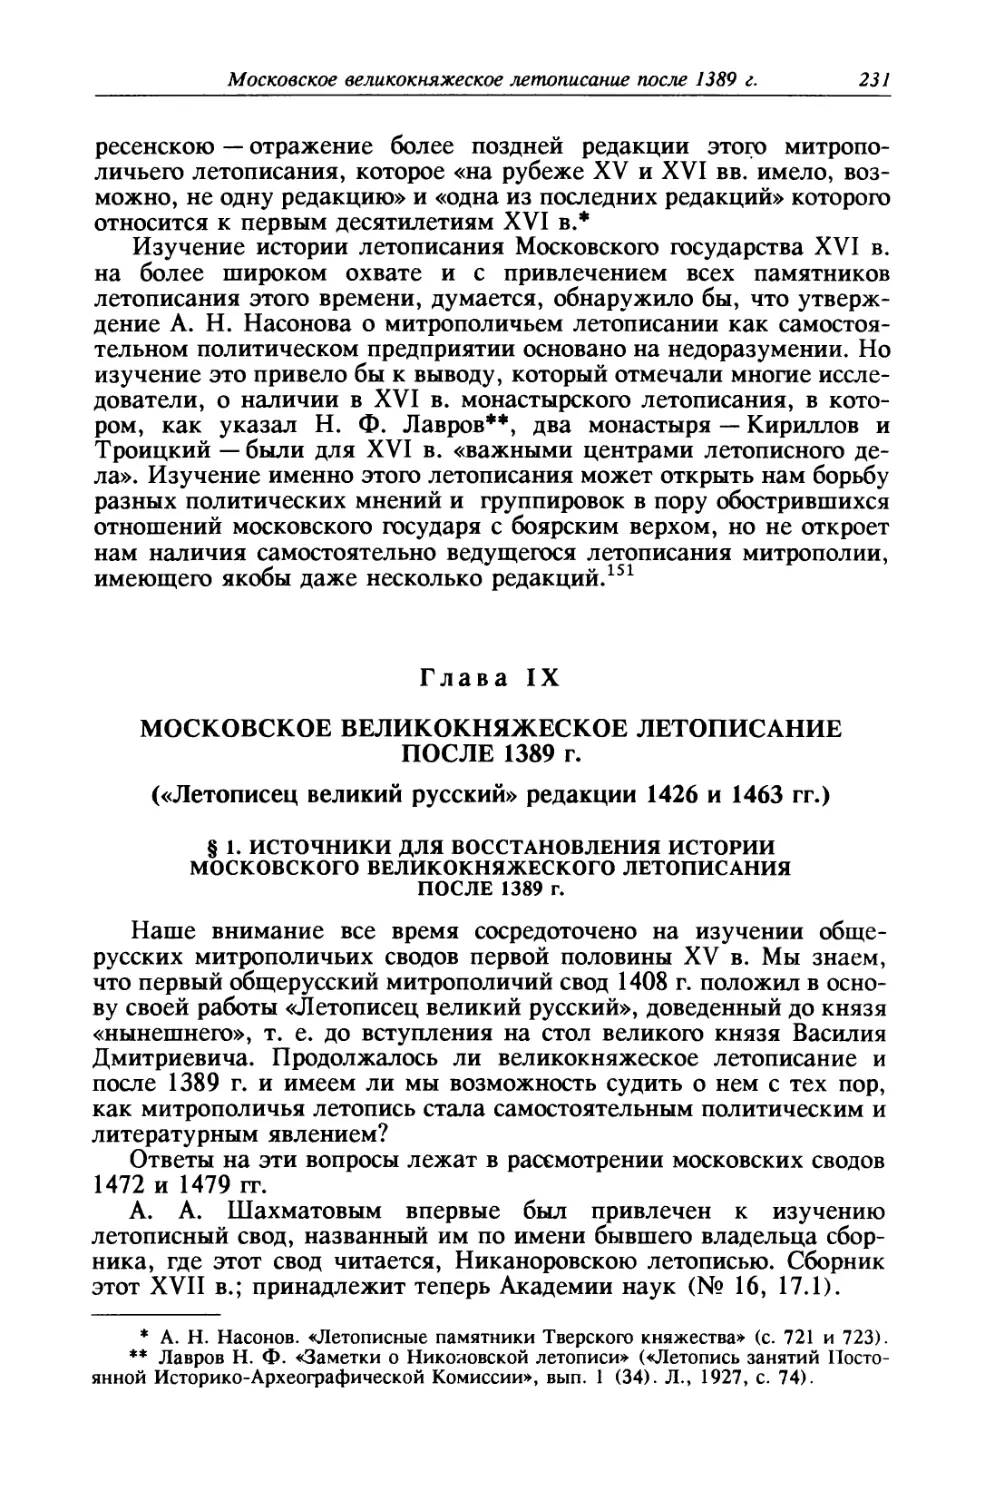 § 1. Источники для восстановления истории московского великокняжеского летописания после 1389 г